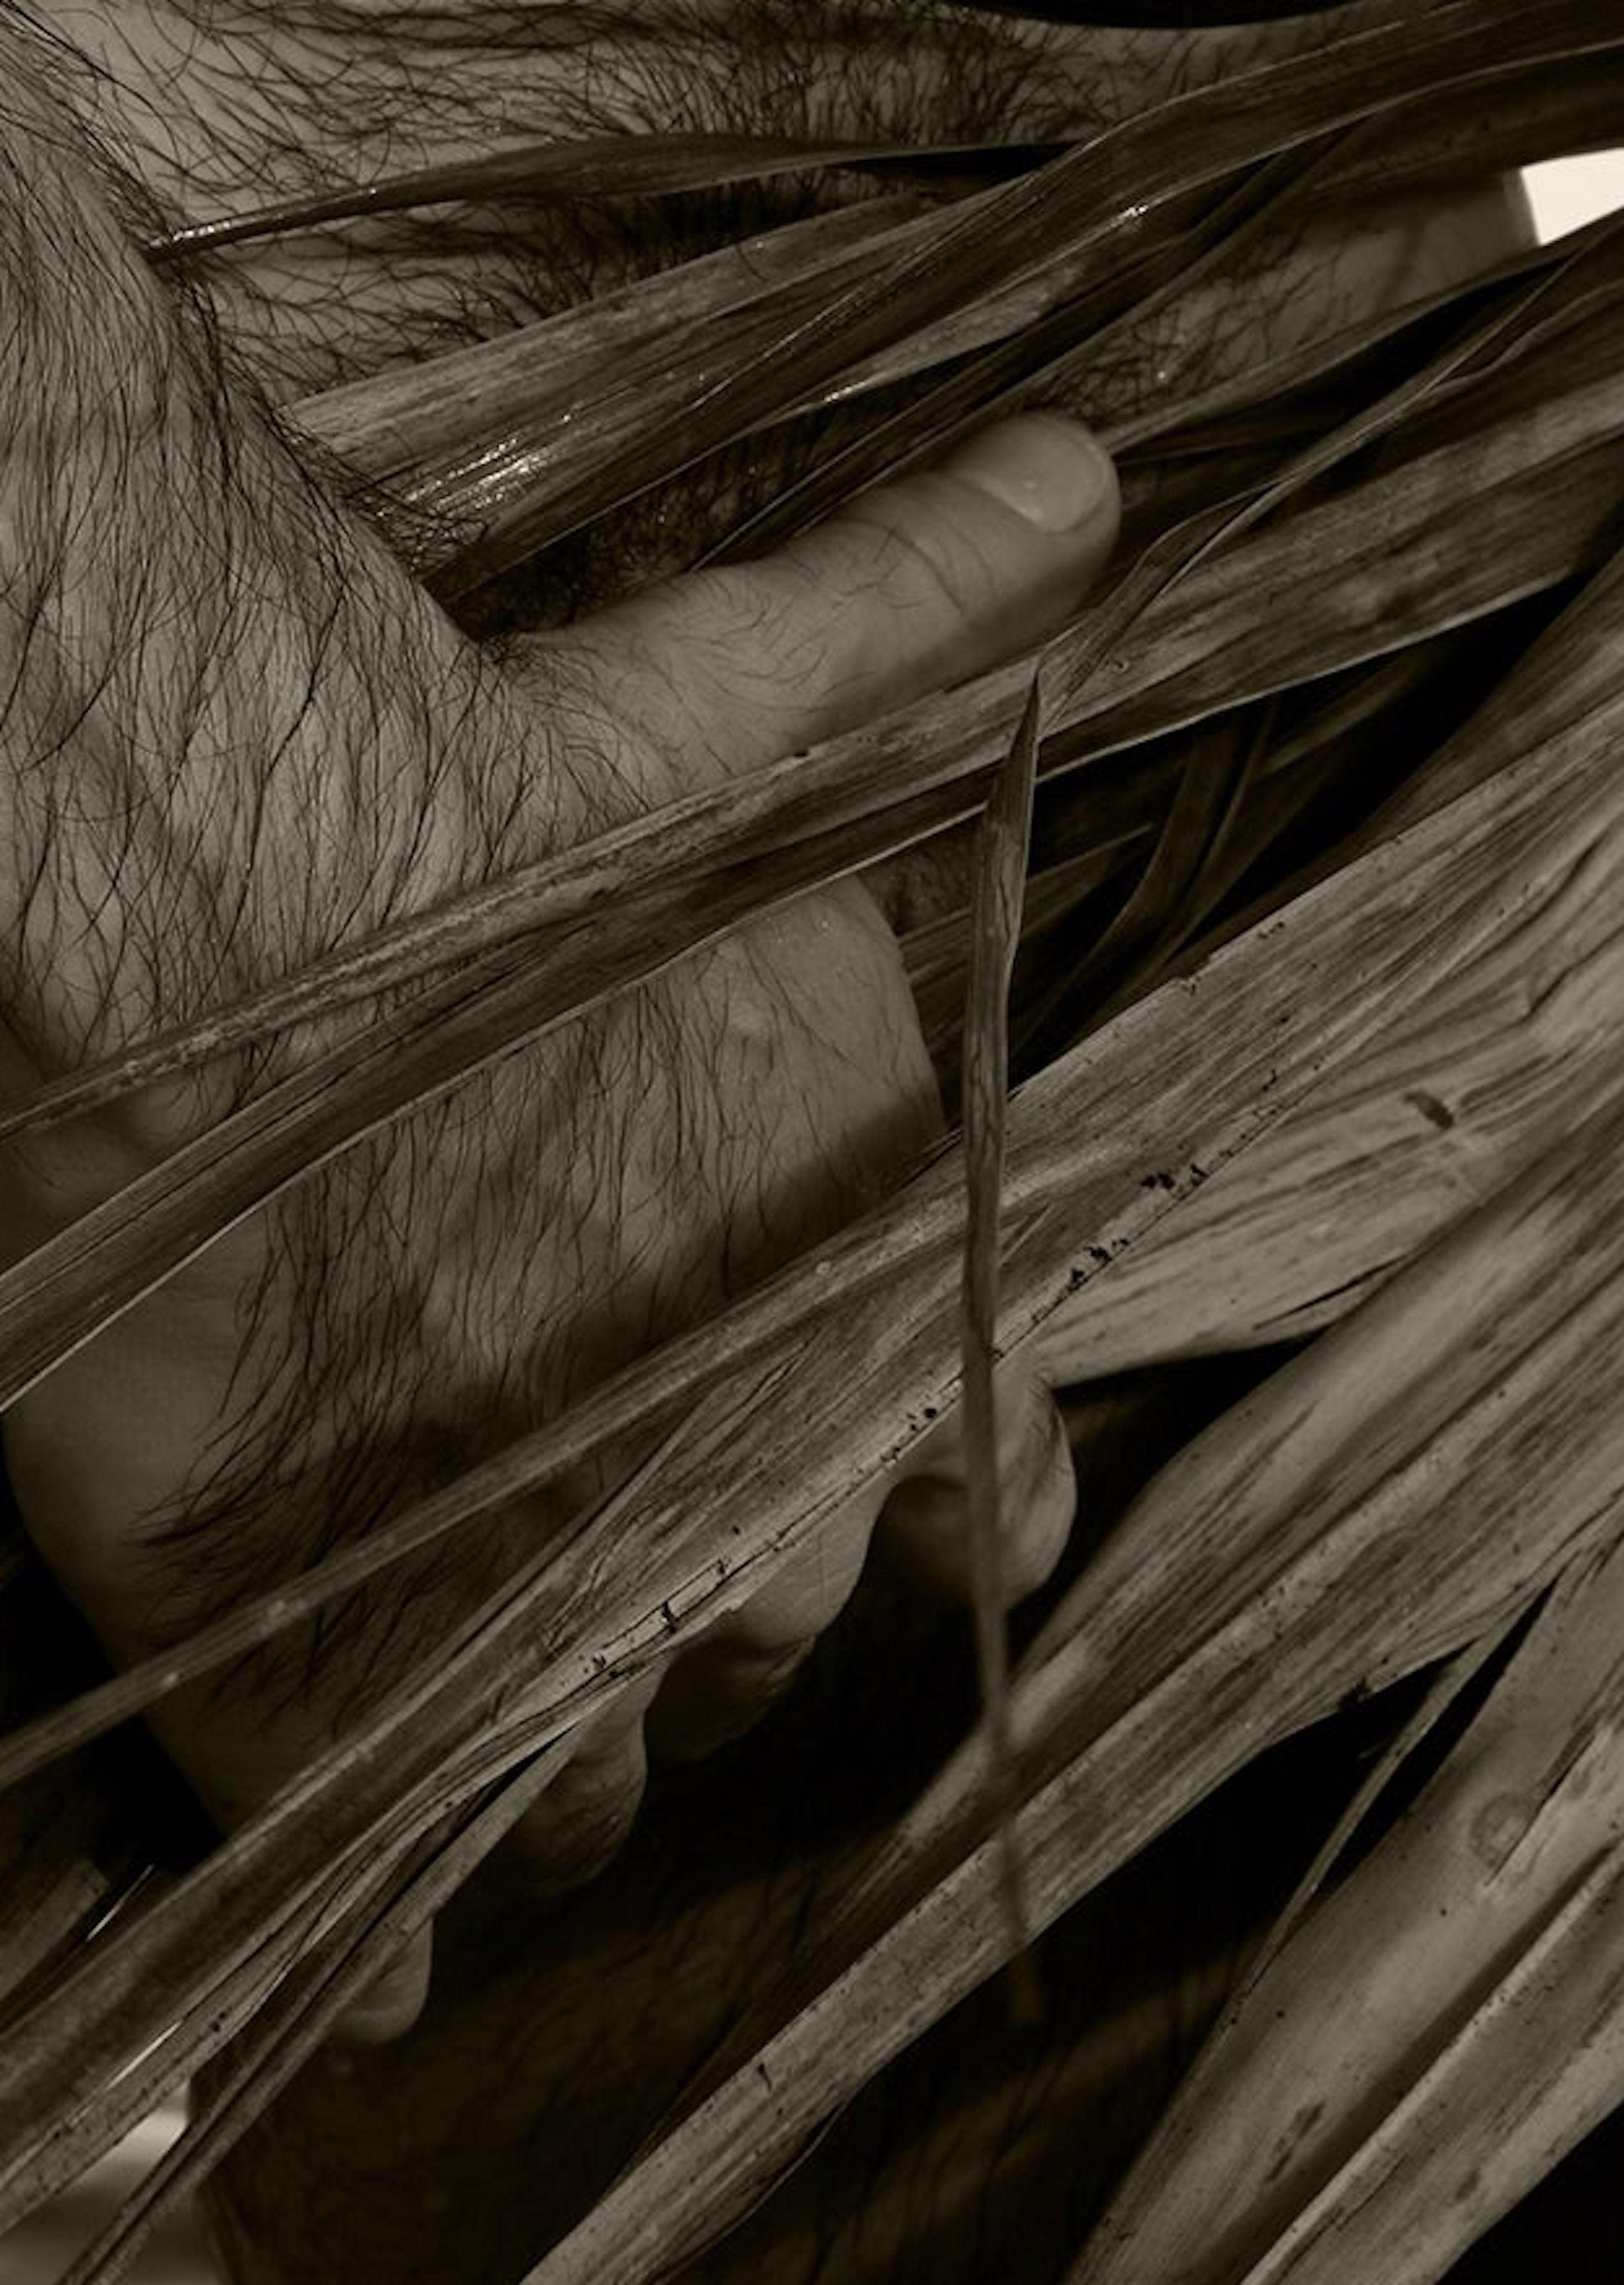 Couleur sépia  Impression à pigments d'archives
Moyen Ed de 10.

Palmiers et arbres : Pour cette série, l'artiste explore de courts poèmes, l'expansion des palmiers, les textures et l'aisance de la figure masculine entourée par la mer et les cieux.